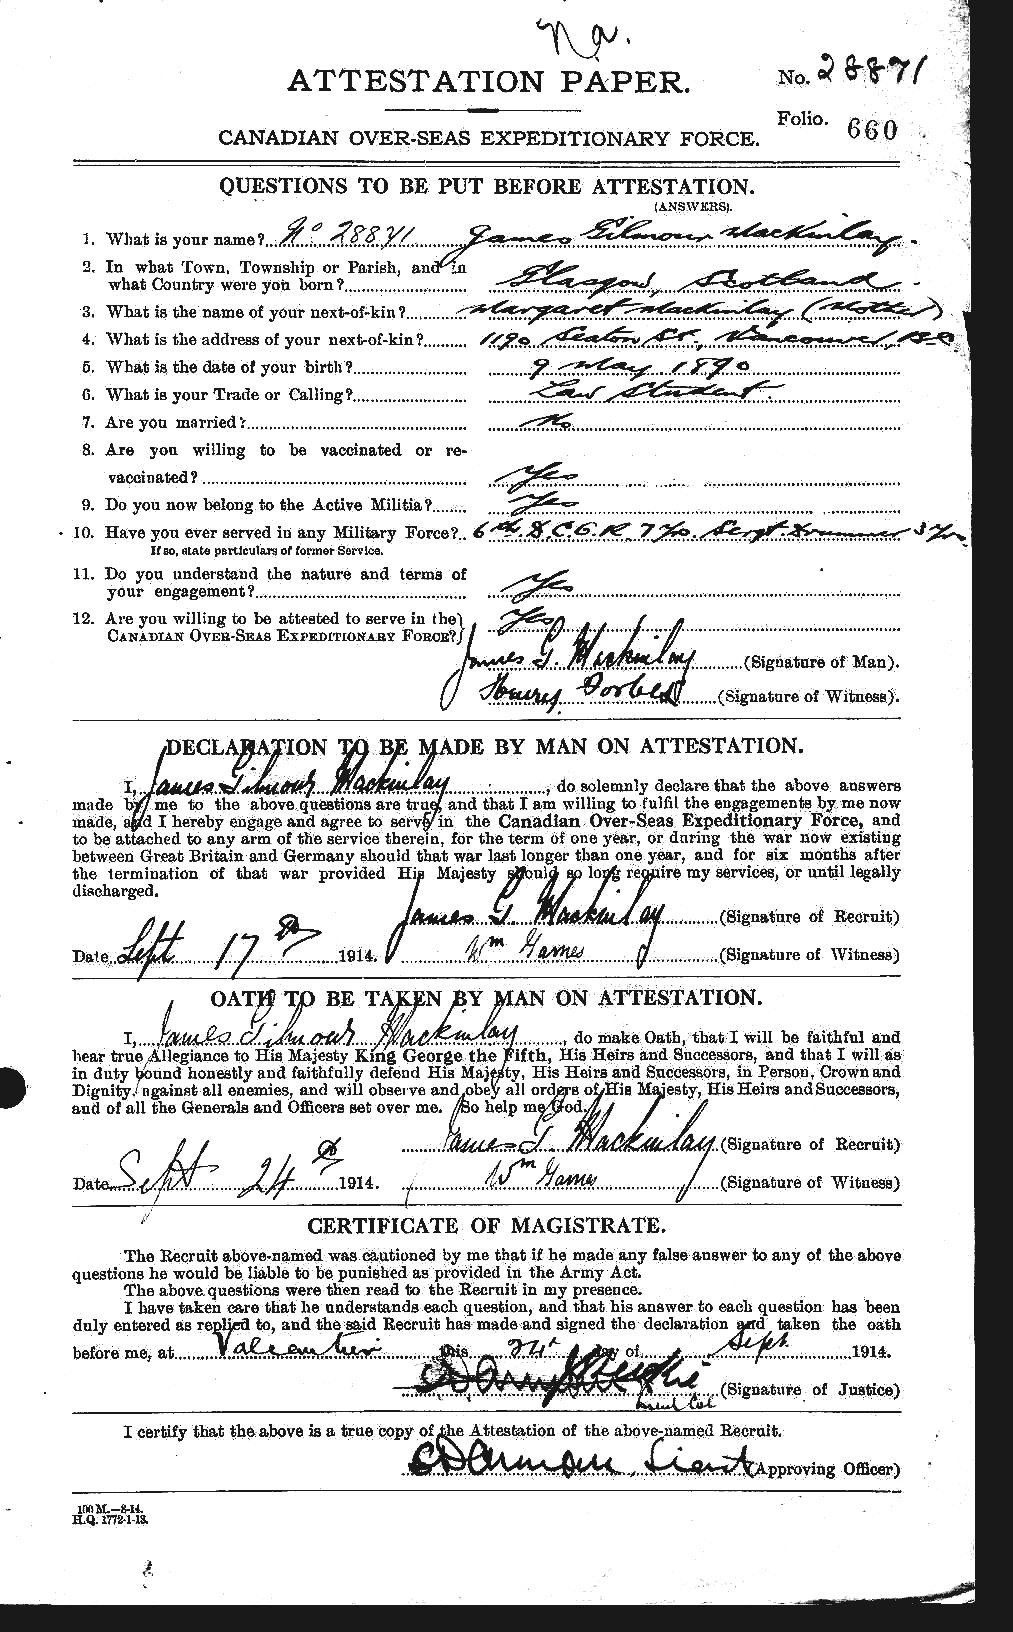 Dossiers du Personnel de la Première Guerre mondiale - CEC 529508a